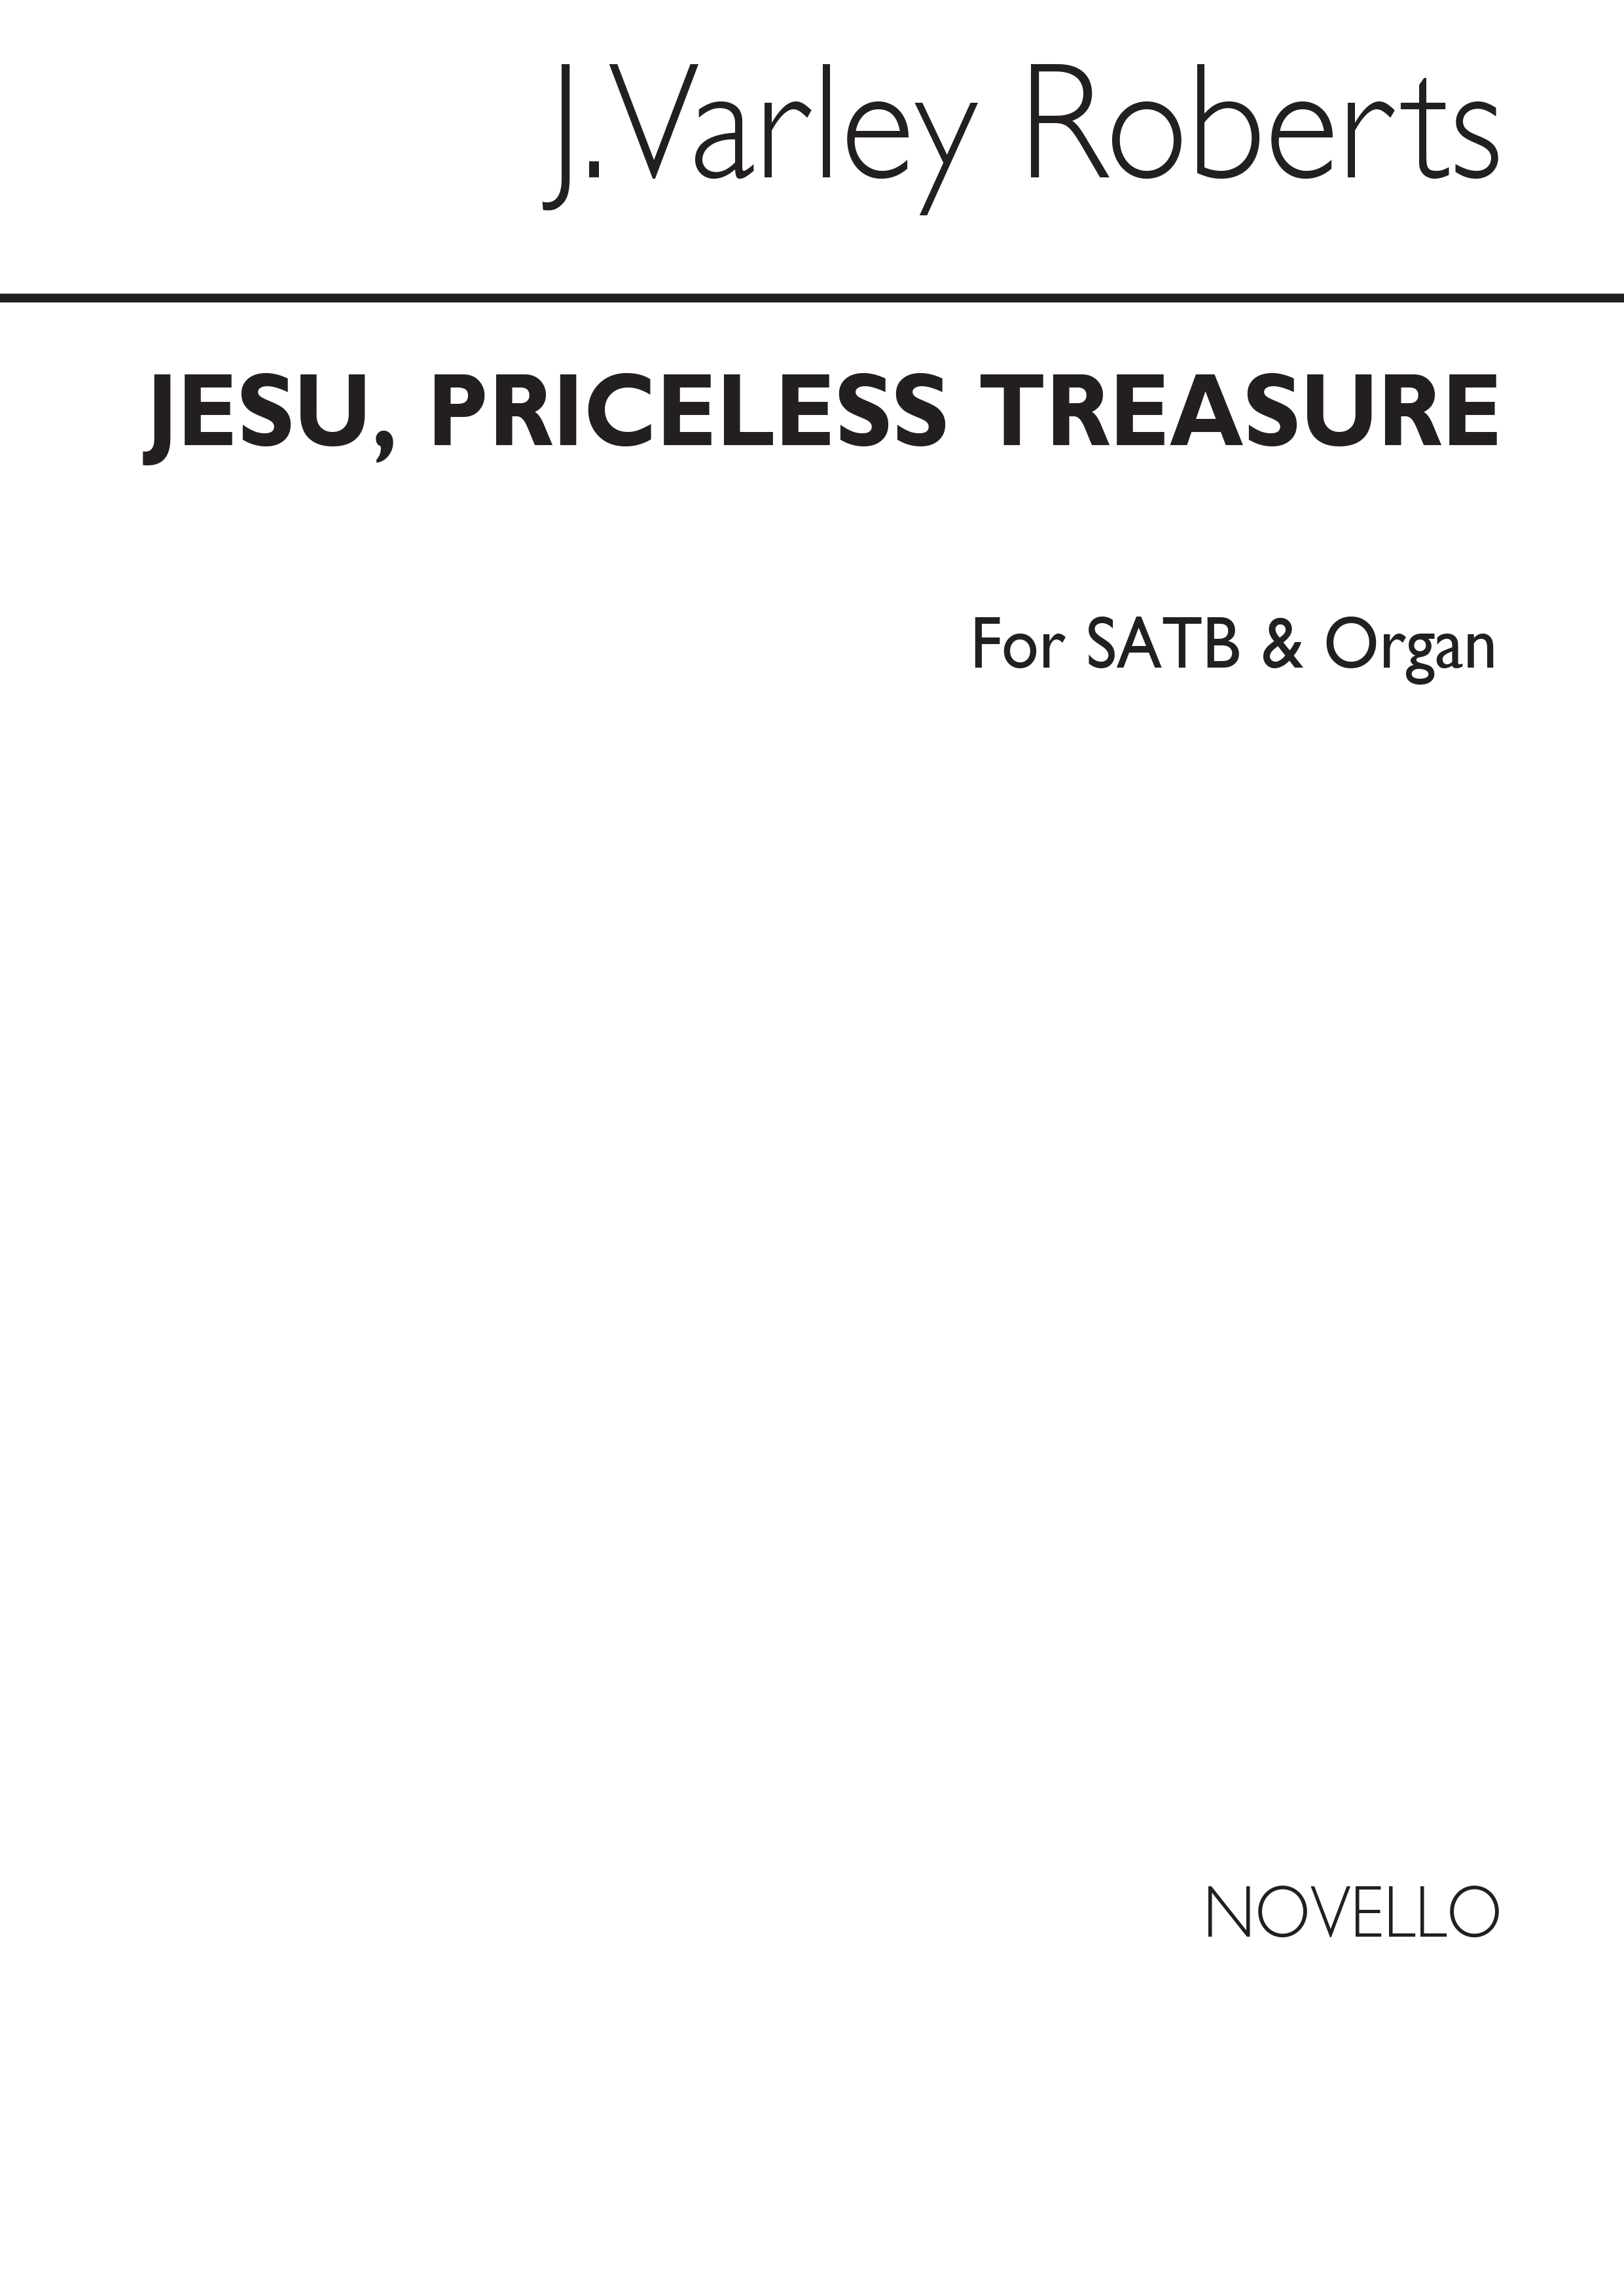 J. Varley Roberts: Jesu, Priceless Treasure SATB/Organ